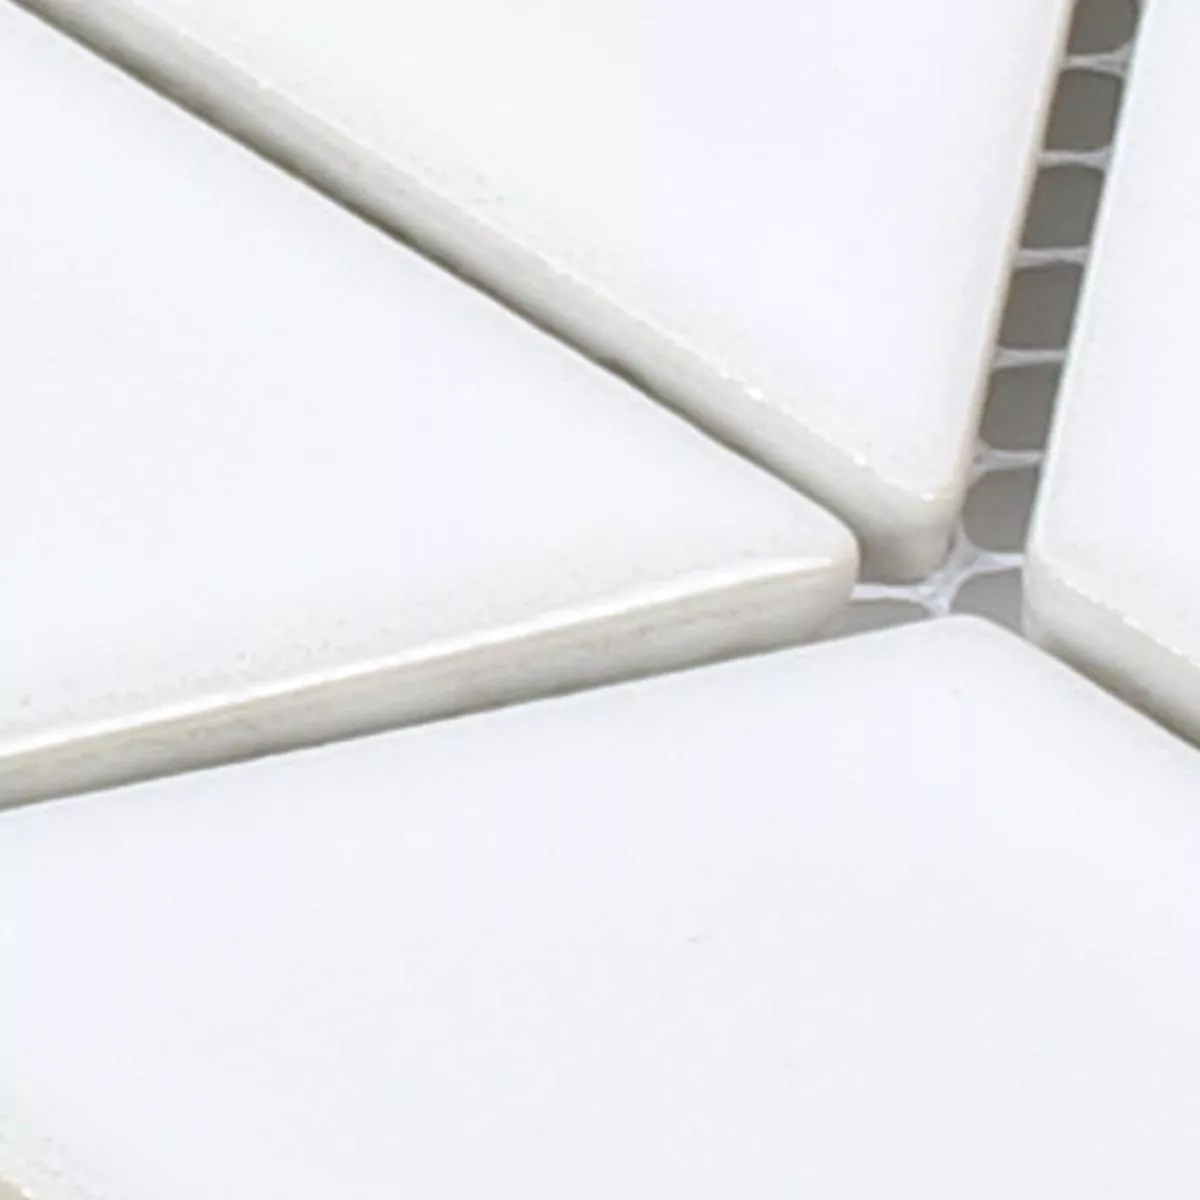 Sample Ceramic Mosaic Tiles Gadwall Wave White